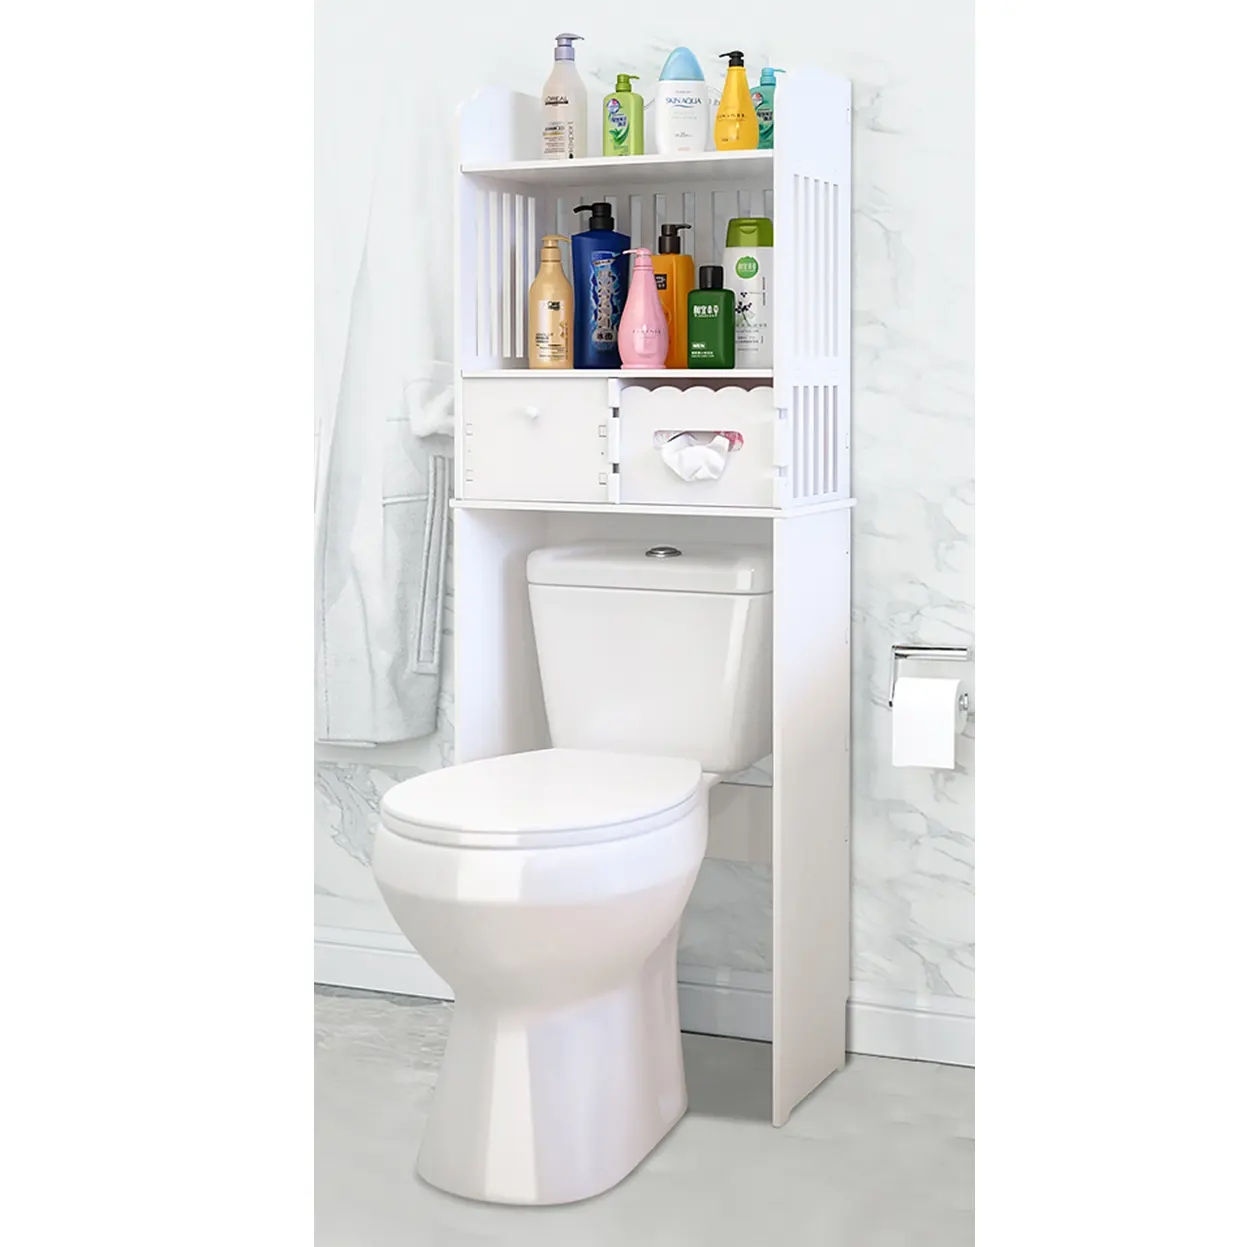 Estante de madera blanca para baño, mueble de almacenamiento para ahorro de espacio sobre el inodoro